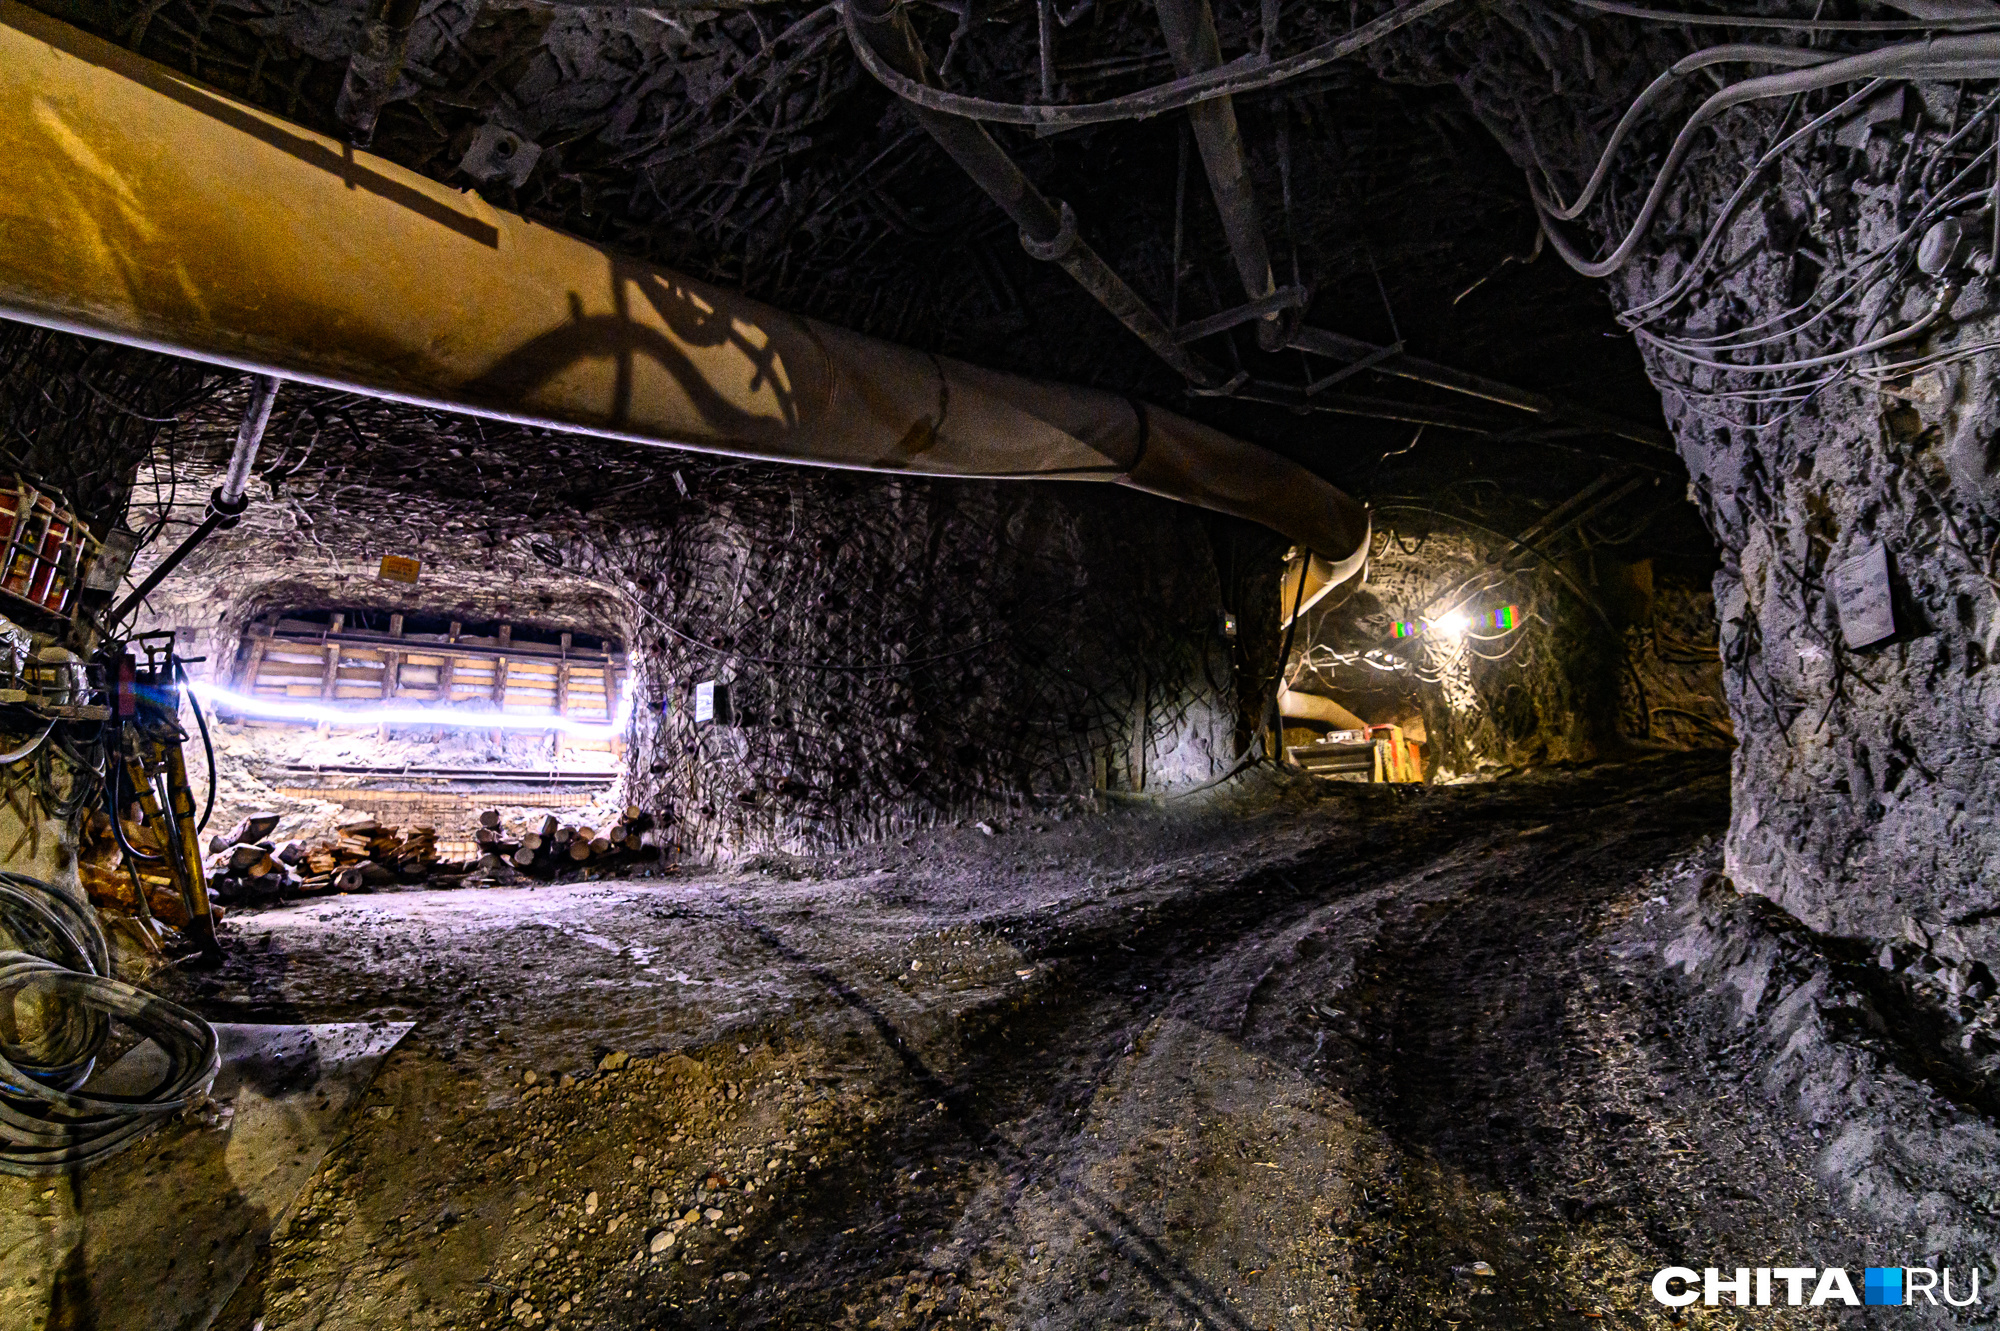 Следователи начали проверку из-за пострадавшего в шахте рабочего в Забайкалье